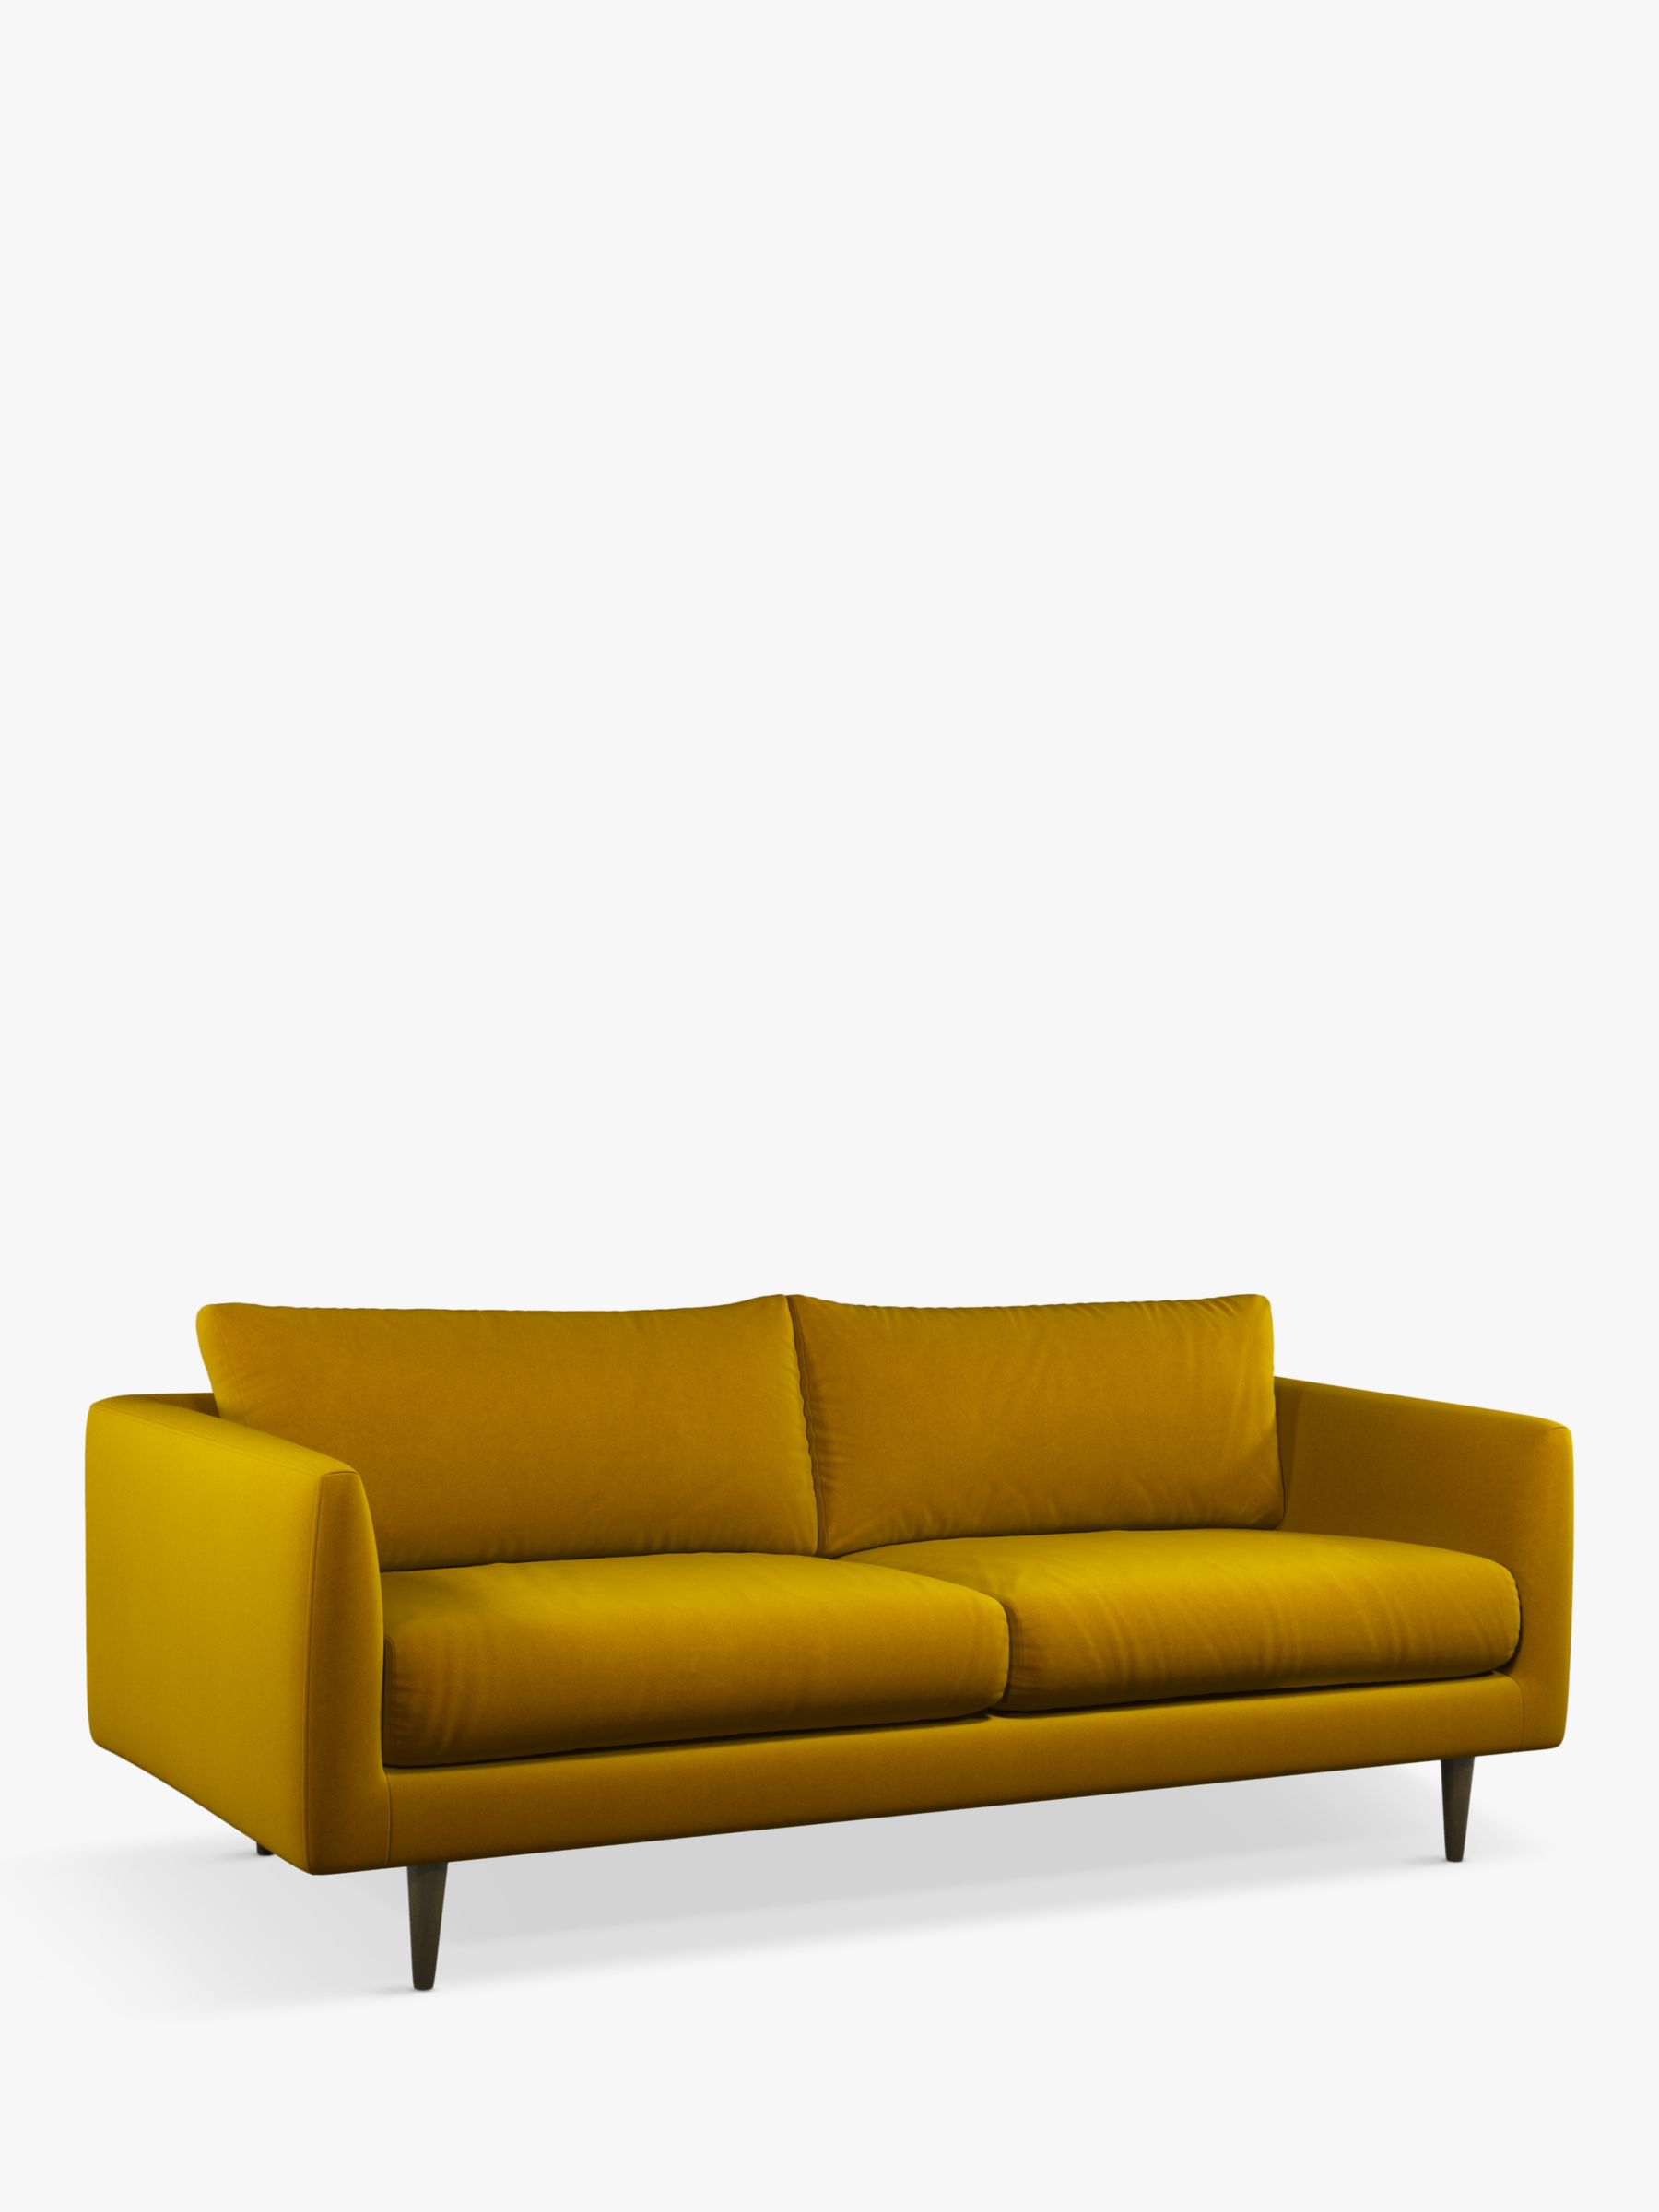 Latimer Range, John Lewis + Swoon Latimer Large 3 Seater Sofa, Dark Leg, Turmeric Velvet